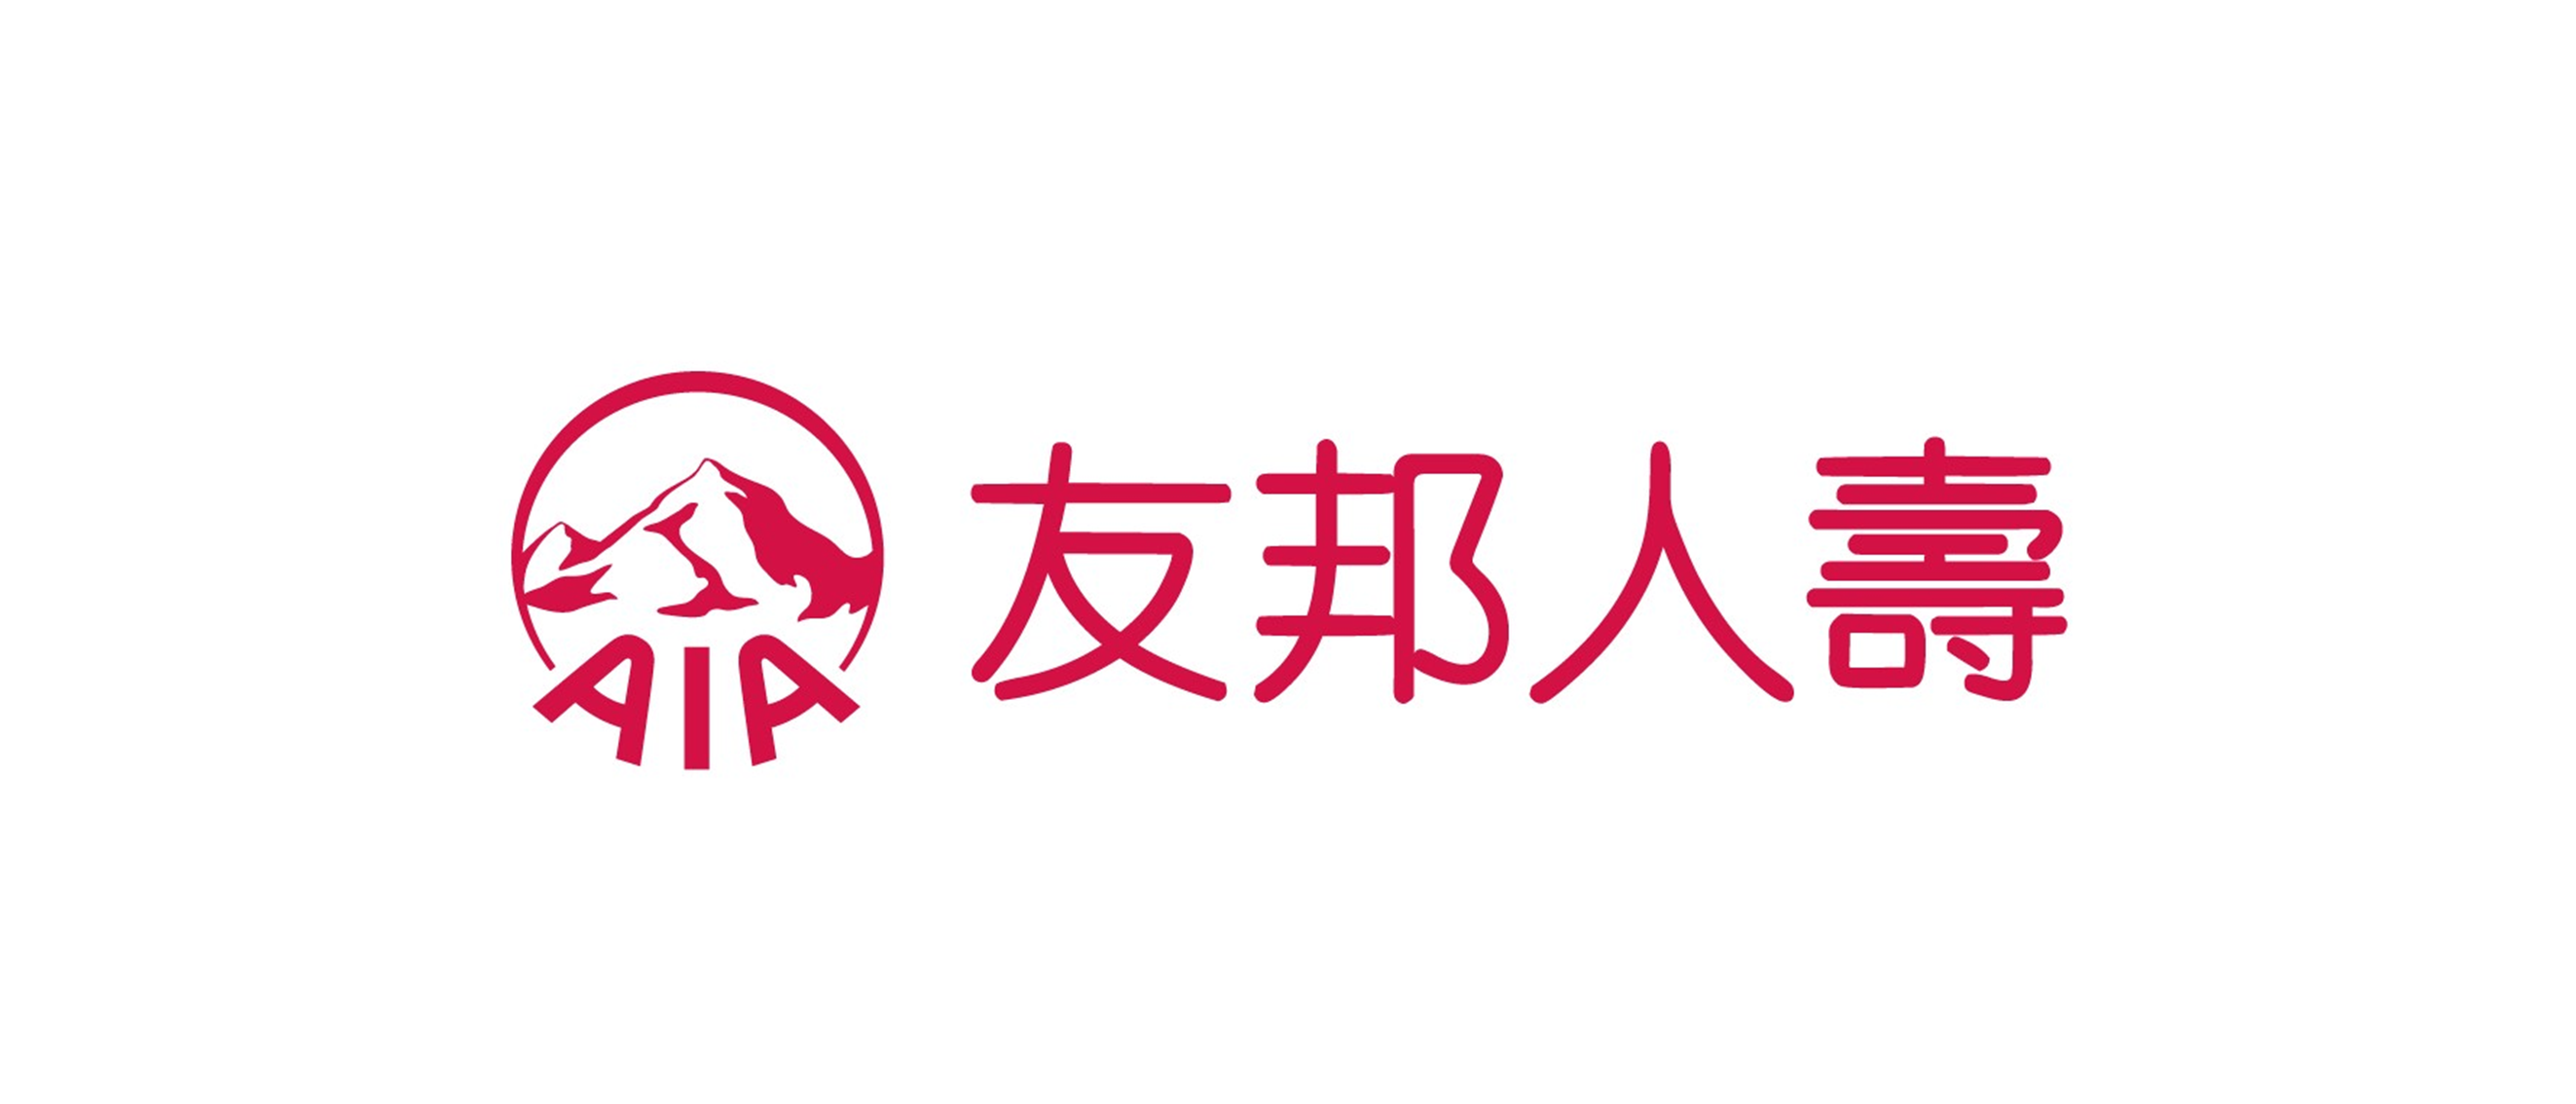 友邦人壽保險股份有限公司logo